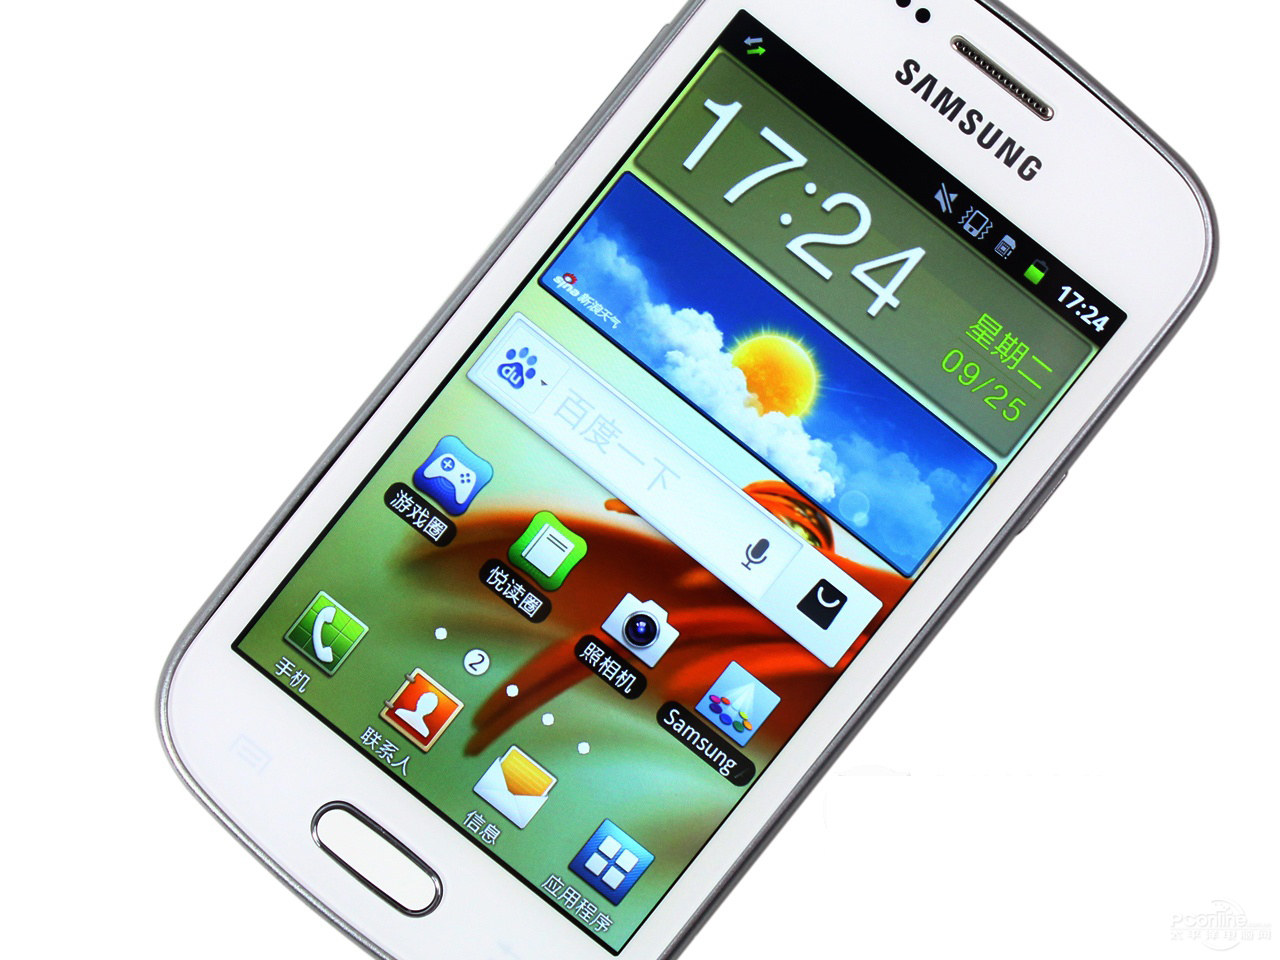 【图】三星I8190(Galaxy S3 mini)图片( SAMSUNG I8190 图片)__标准外观图_第8页_太平洋产品报价